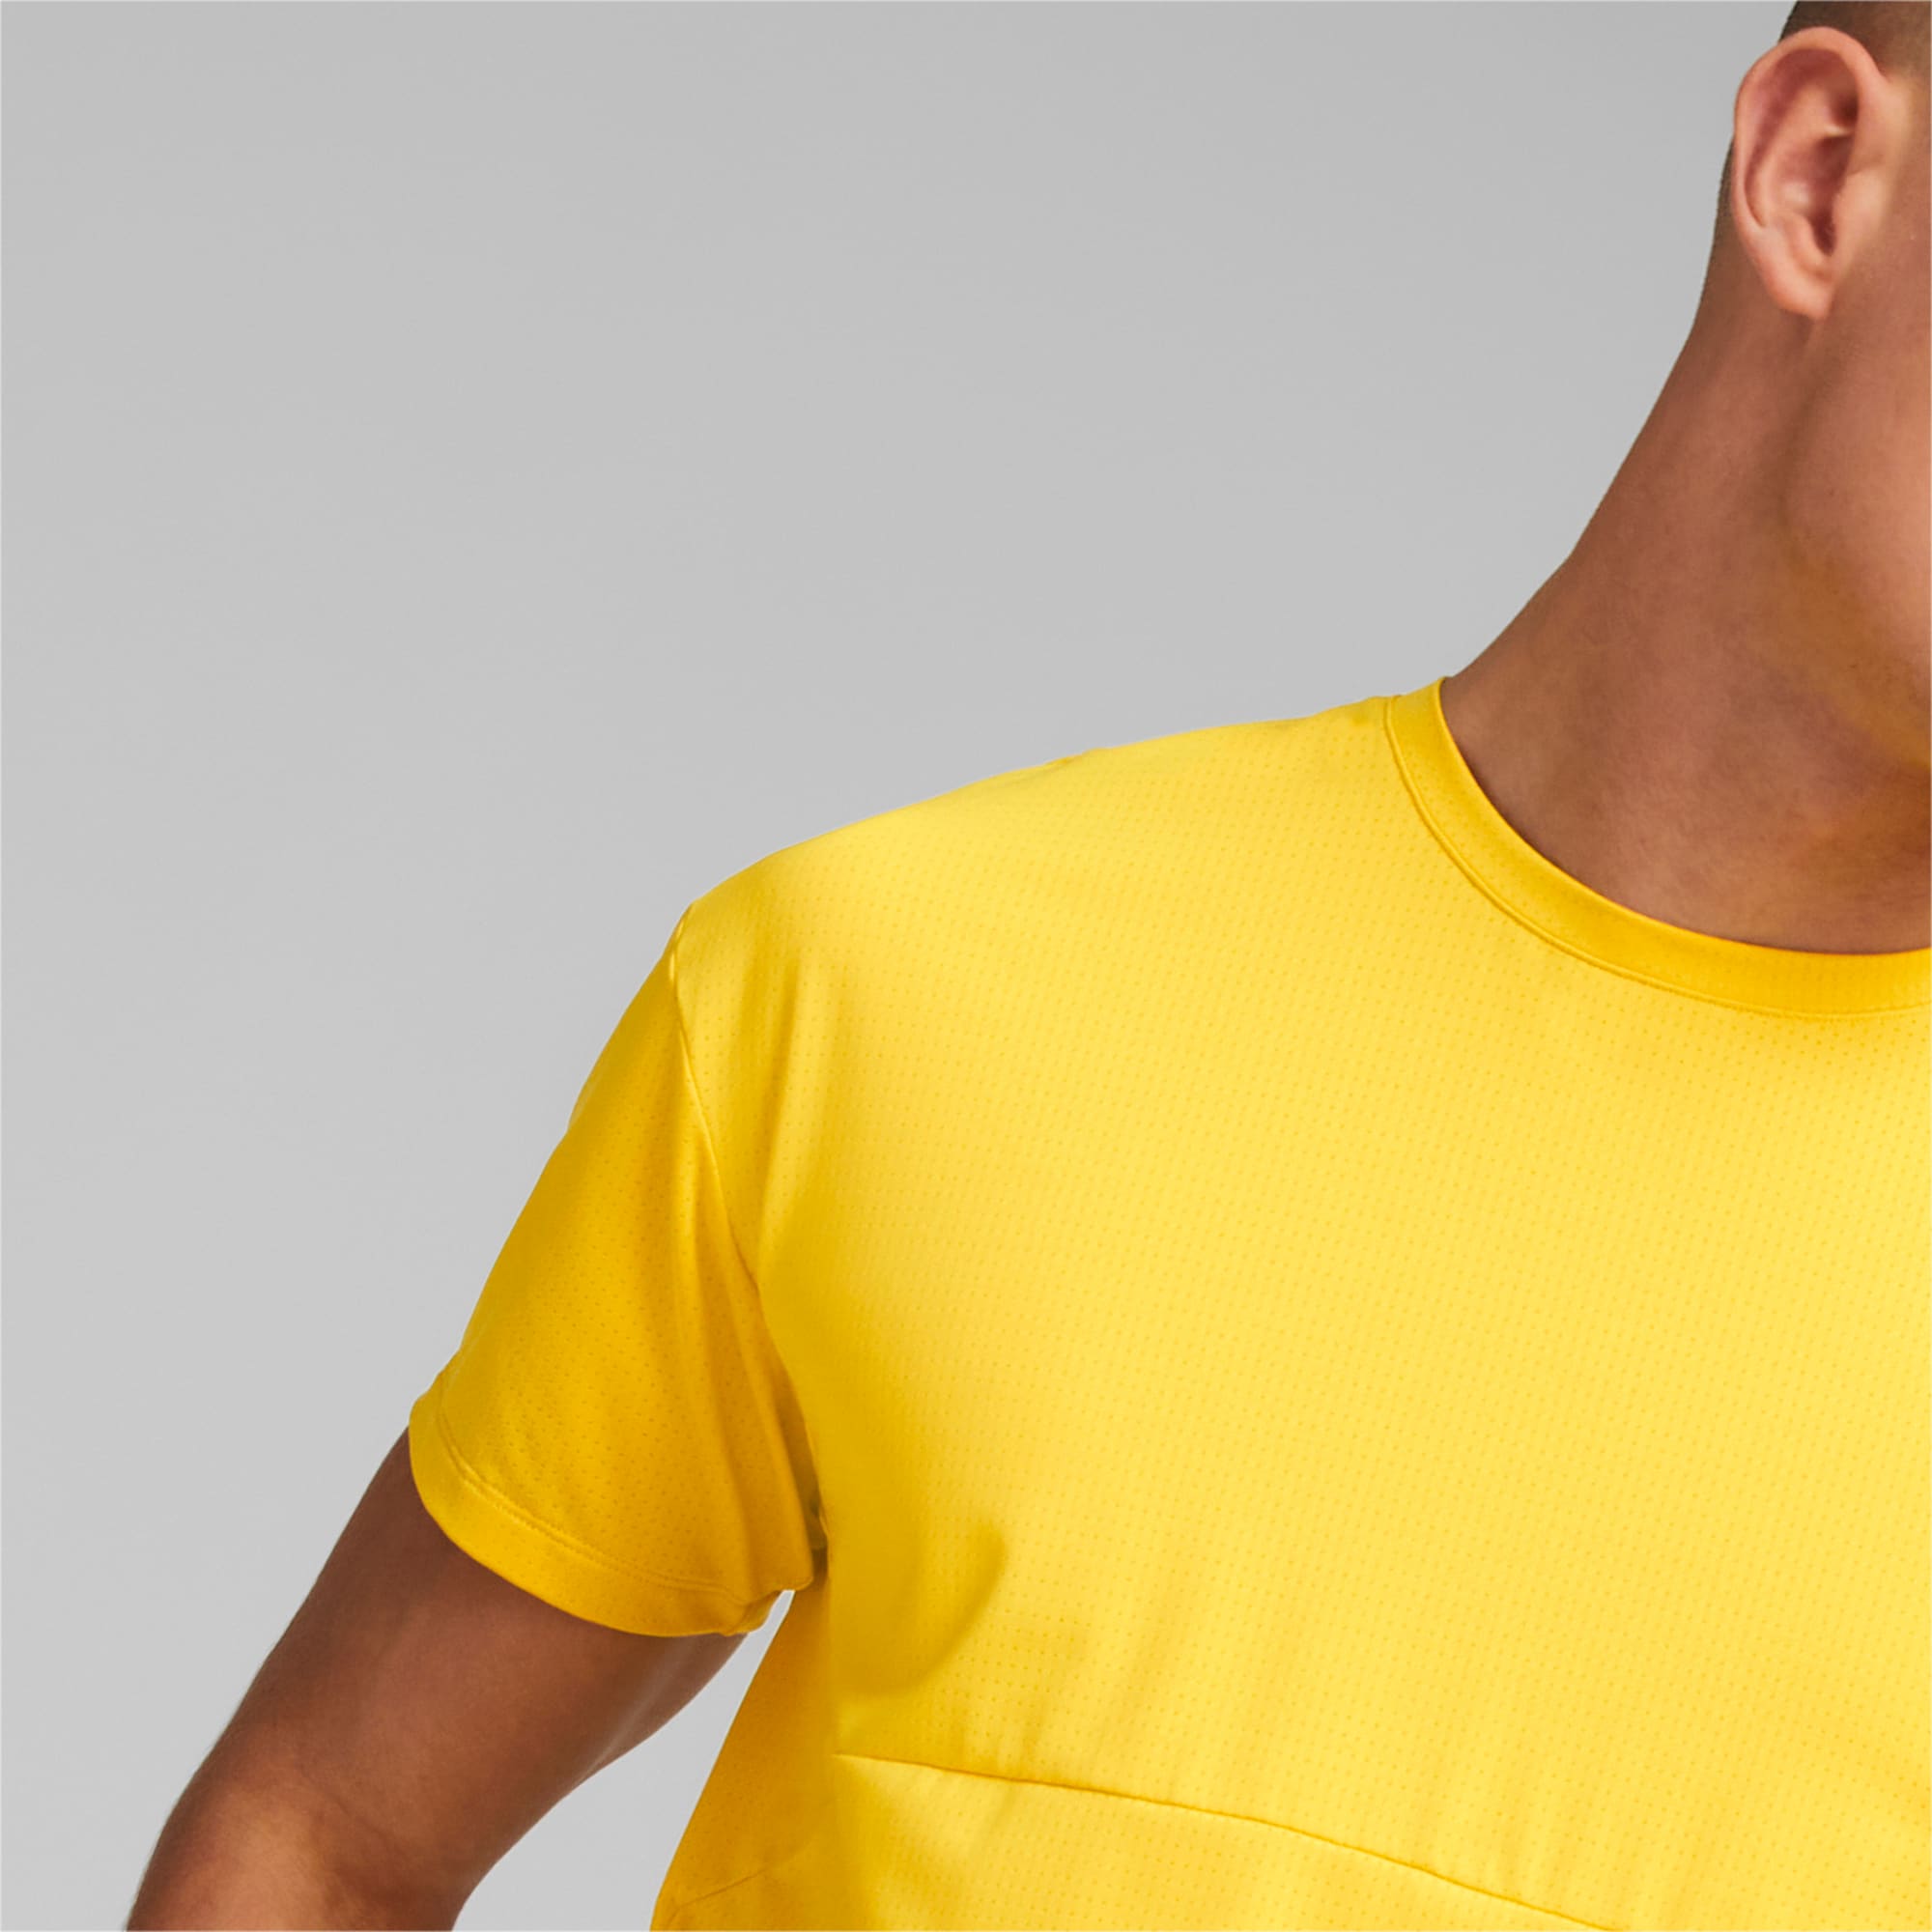 PUMA X First Mile Commercial Running T-Shirt Herren, Mehrfarbig, Größe: L, Kleidung